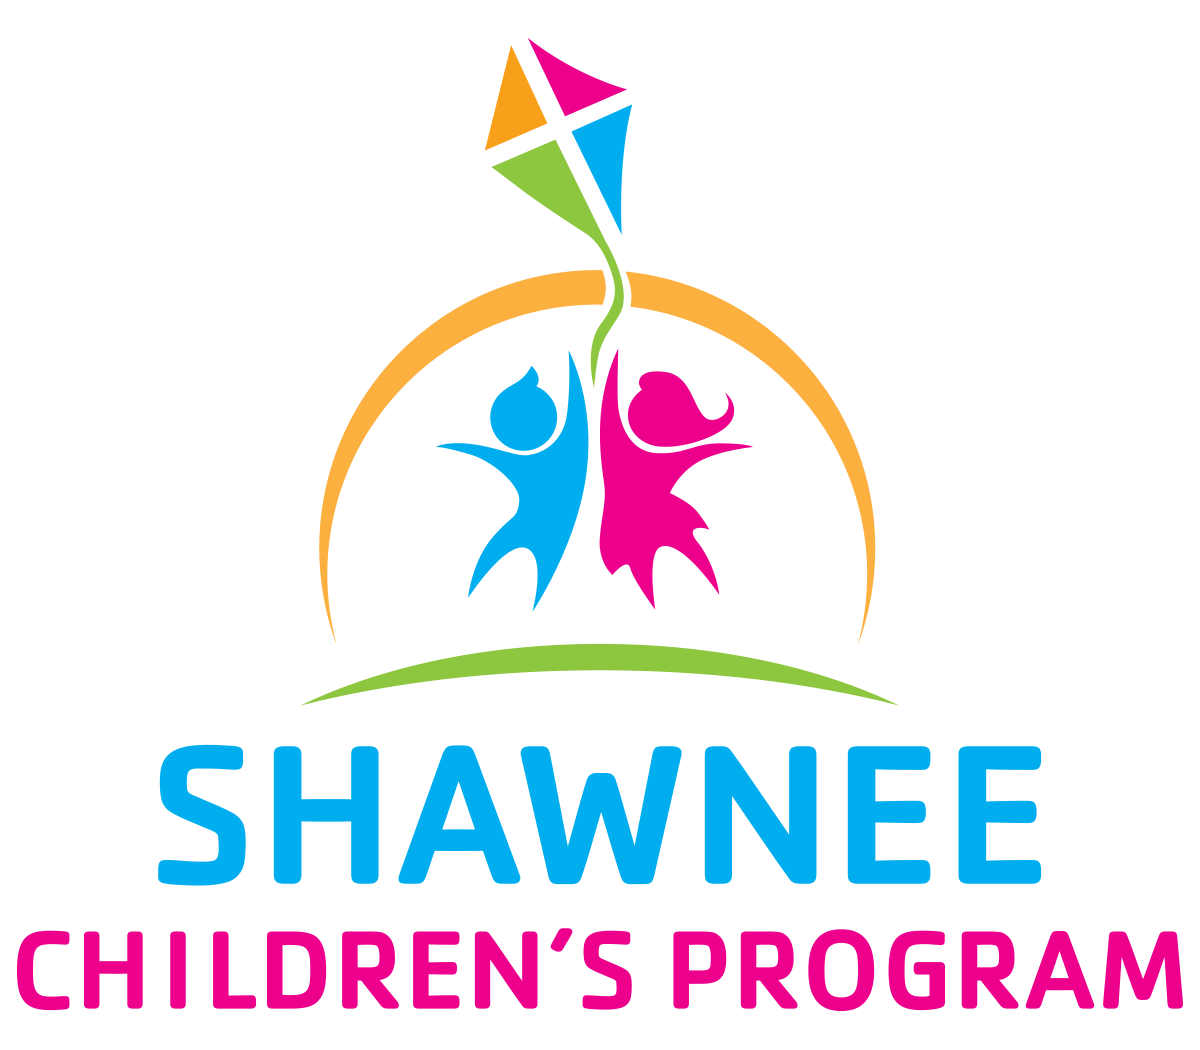 Shawnee Children's Program